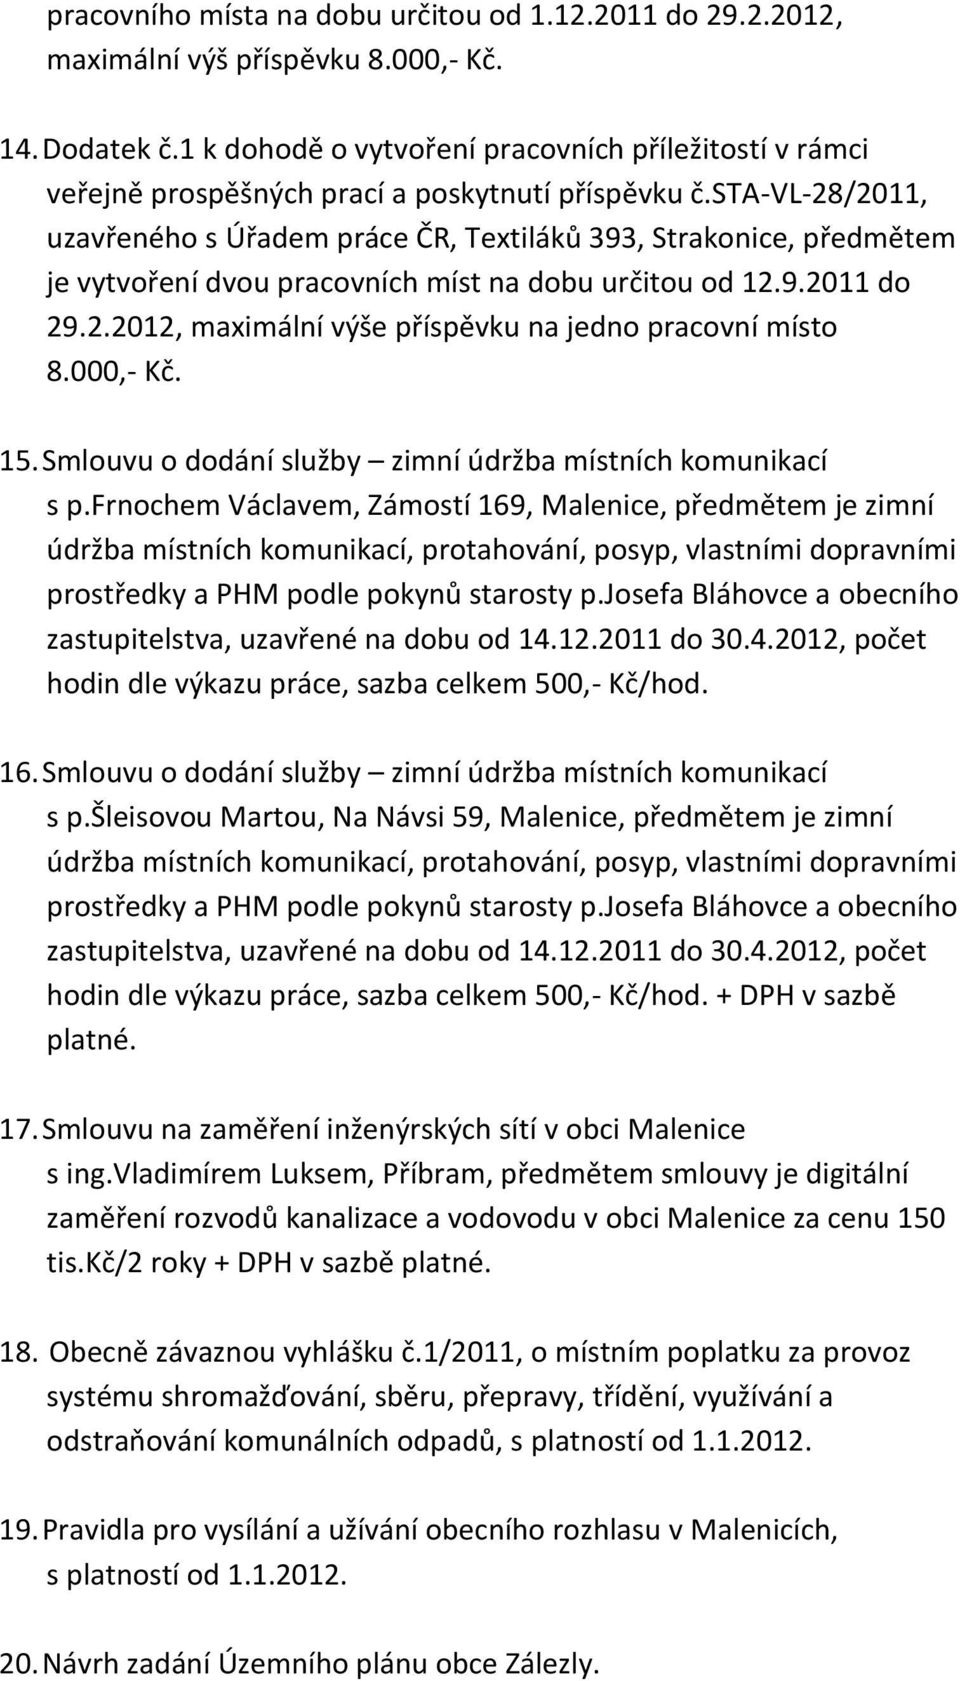 sta-vl-28/2011, uzavřeného s Úřadem práce ČR, Textiláků 393, Strakonice, předmětem je vytvoření dvou pracovních míst na dobu určitou od 12.9.2011 do 29.2.2012, maximální výše příspěvku na jedno pracovní místo 8.